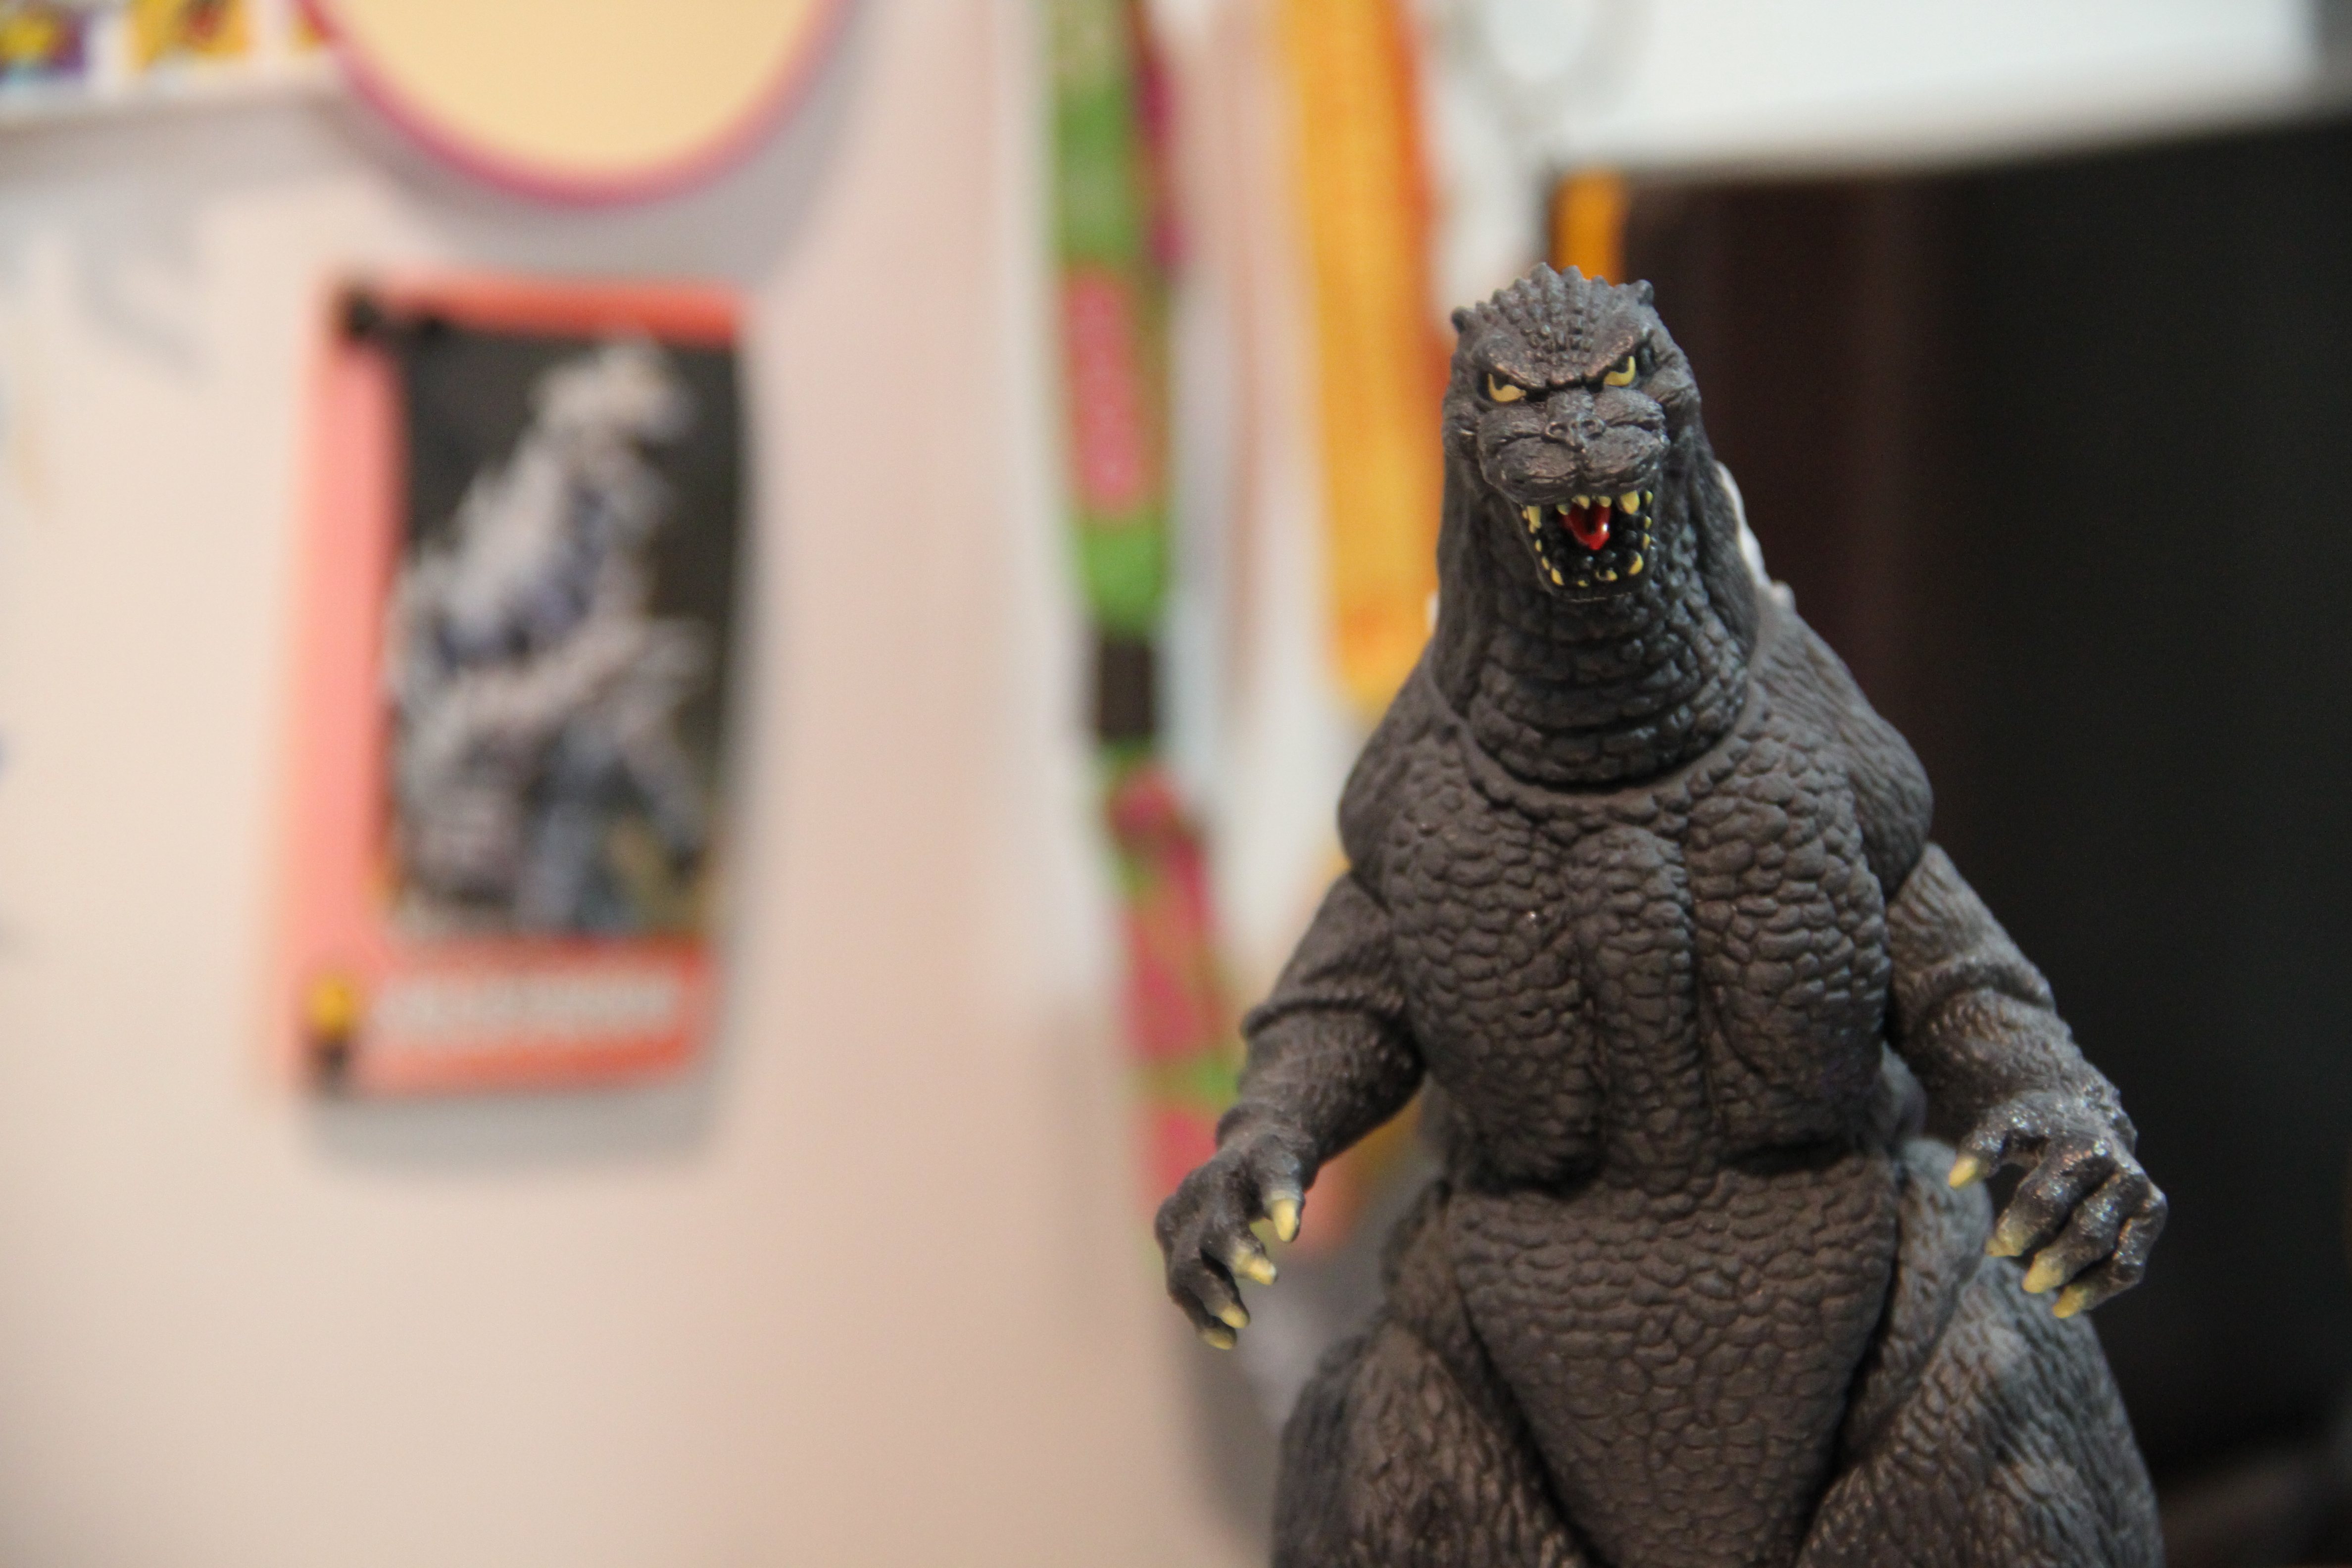 Descarga gratuita de fondo de pantalla para móvil de Godzilla, Fantasía.